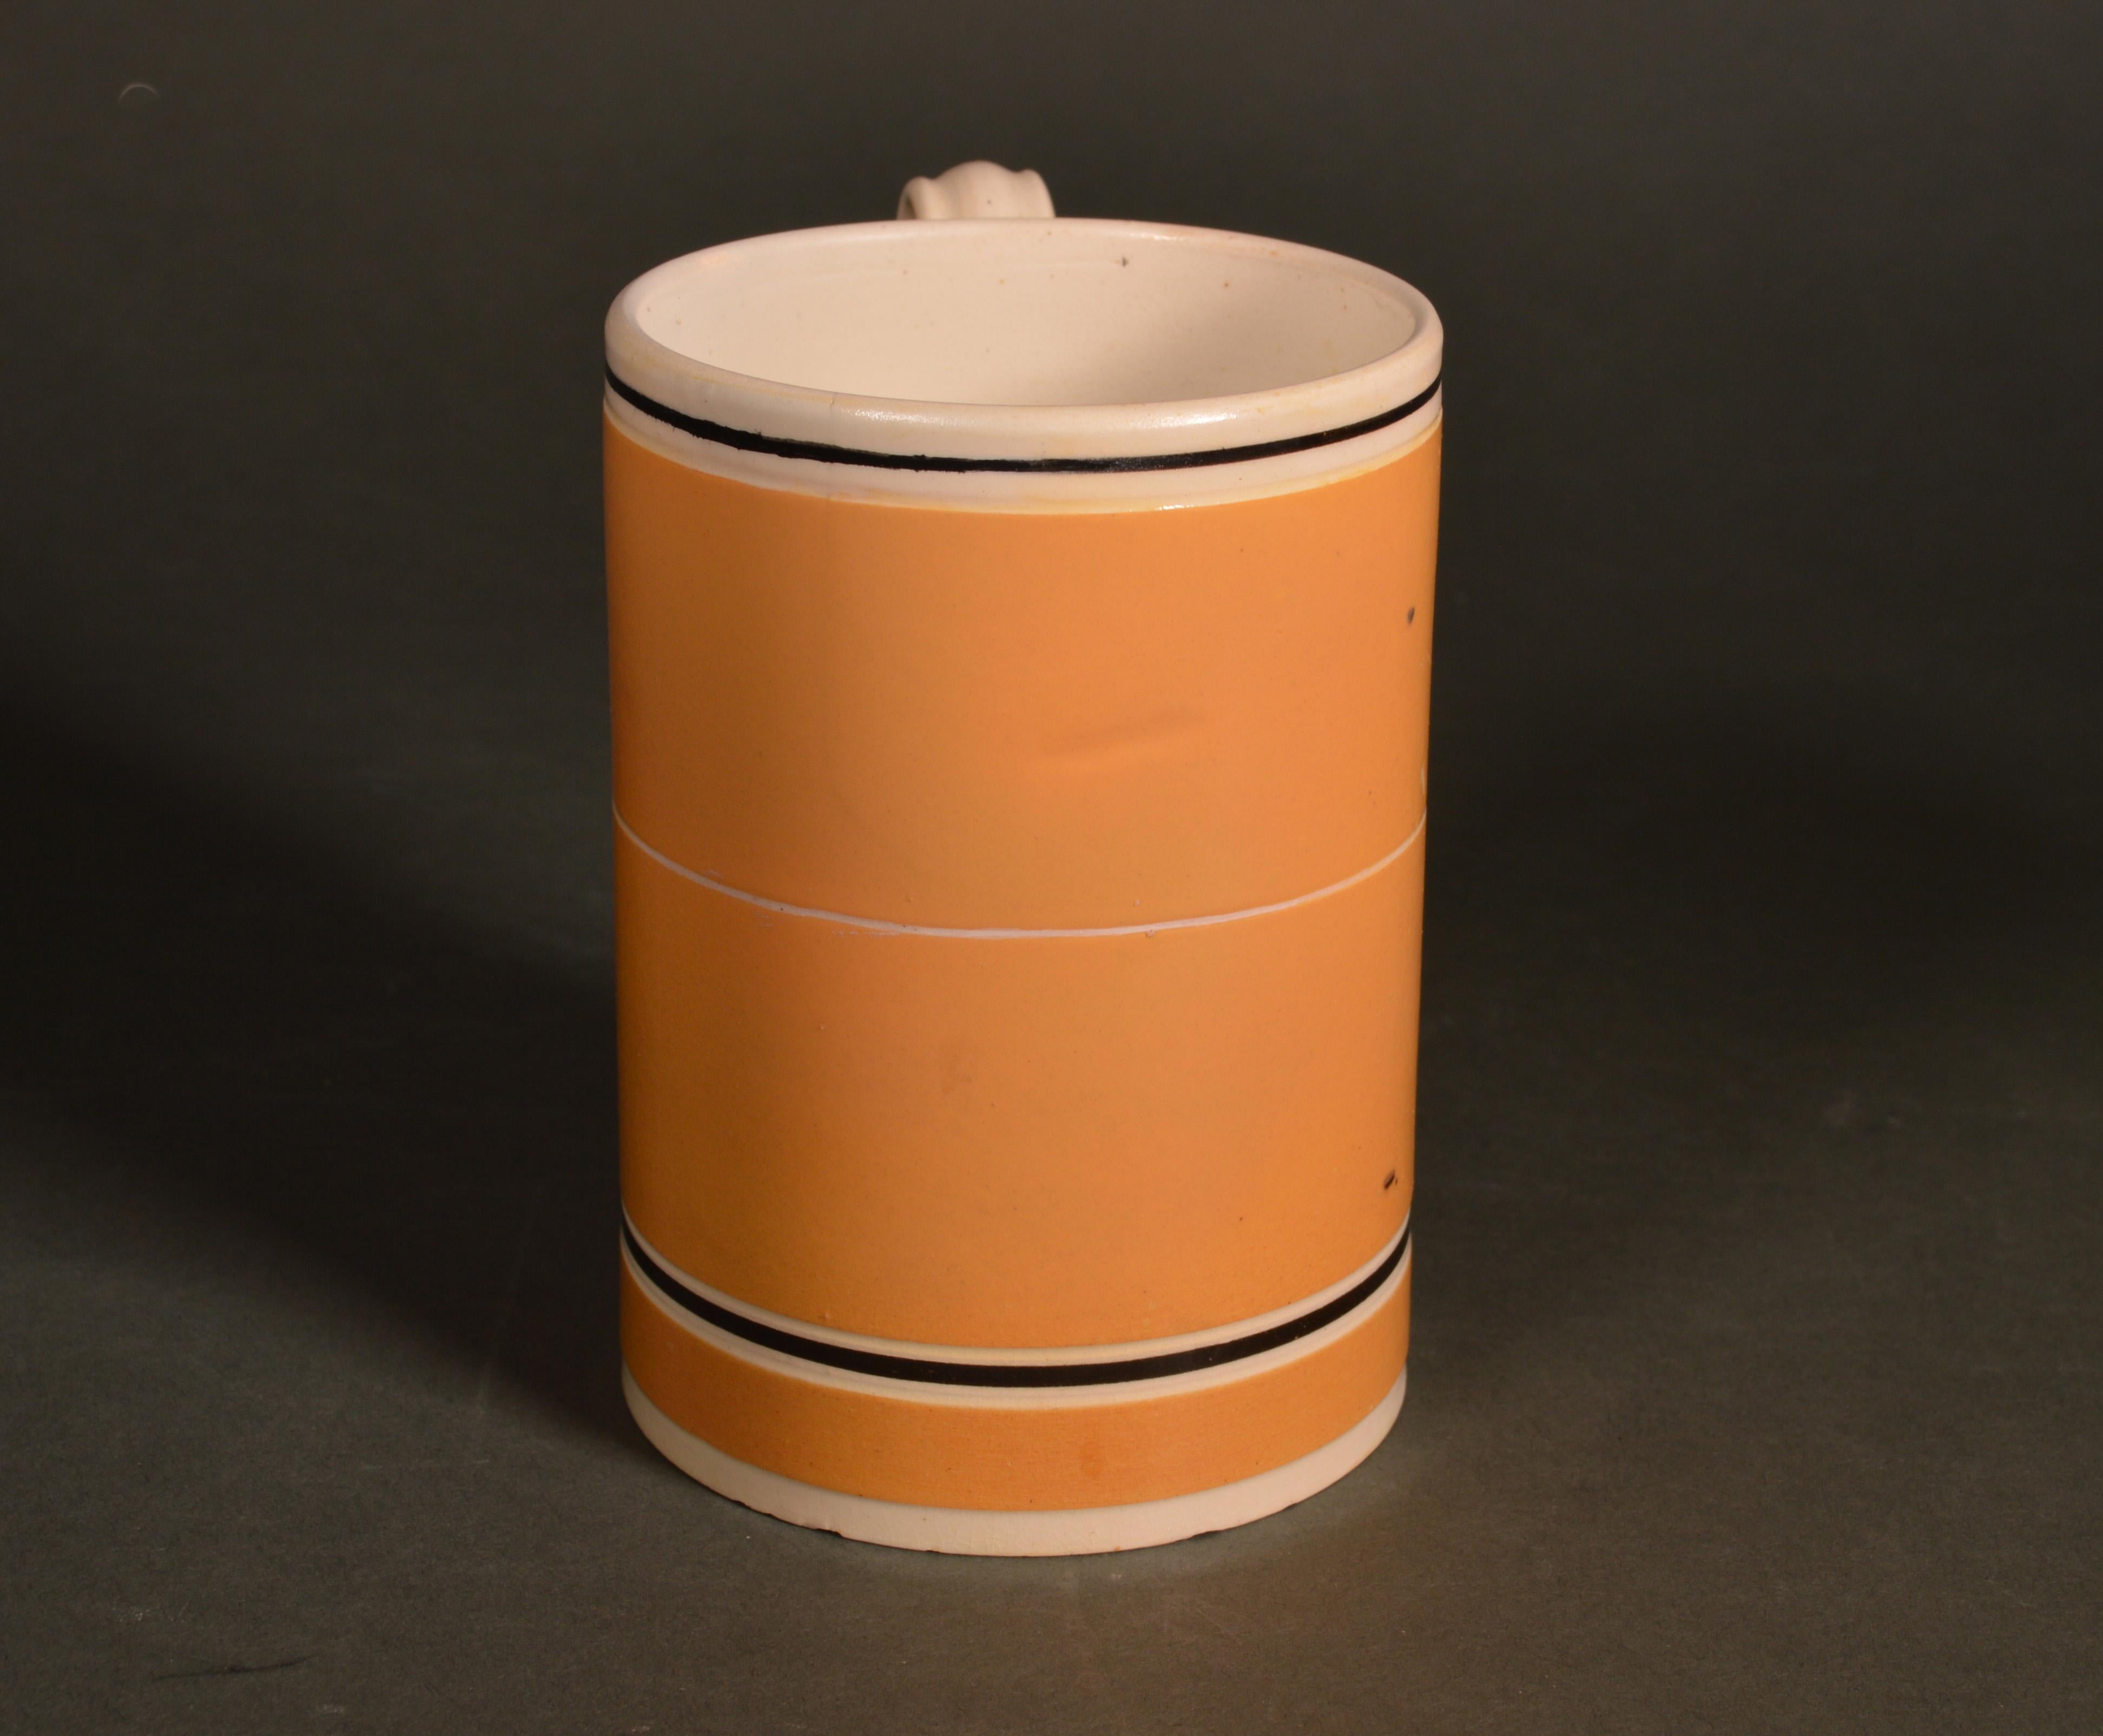 Mokka-Keramikbecher mit ockerfarbenem Schlickergrund,
um 1790-1810
  

Der zylindrische Becher mit ausgestelltem Fuß hat einen ockerfarbenen Schlickergrund mit einem breiten weißen Band am Rand und einer schmalen braunen Linie, die den Körper